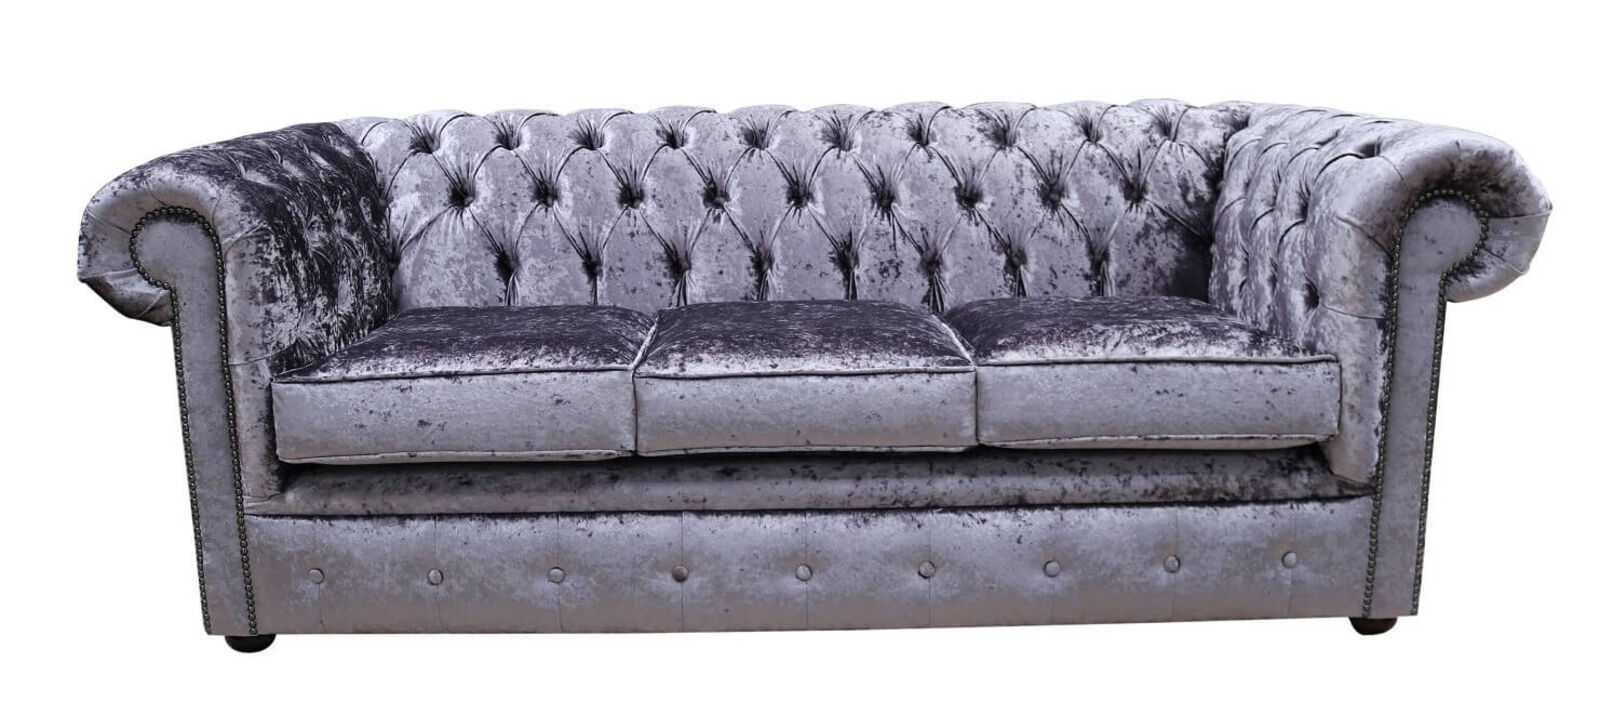 Product photograph of Chesterfield 3 Seater Settee Senso Fondant Velvet Sofa Offer from Designer Sofas 4U